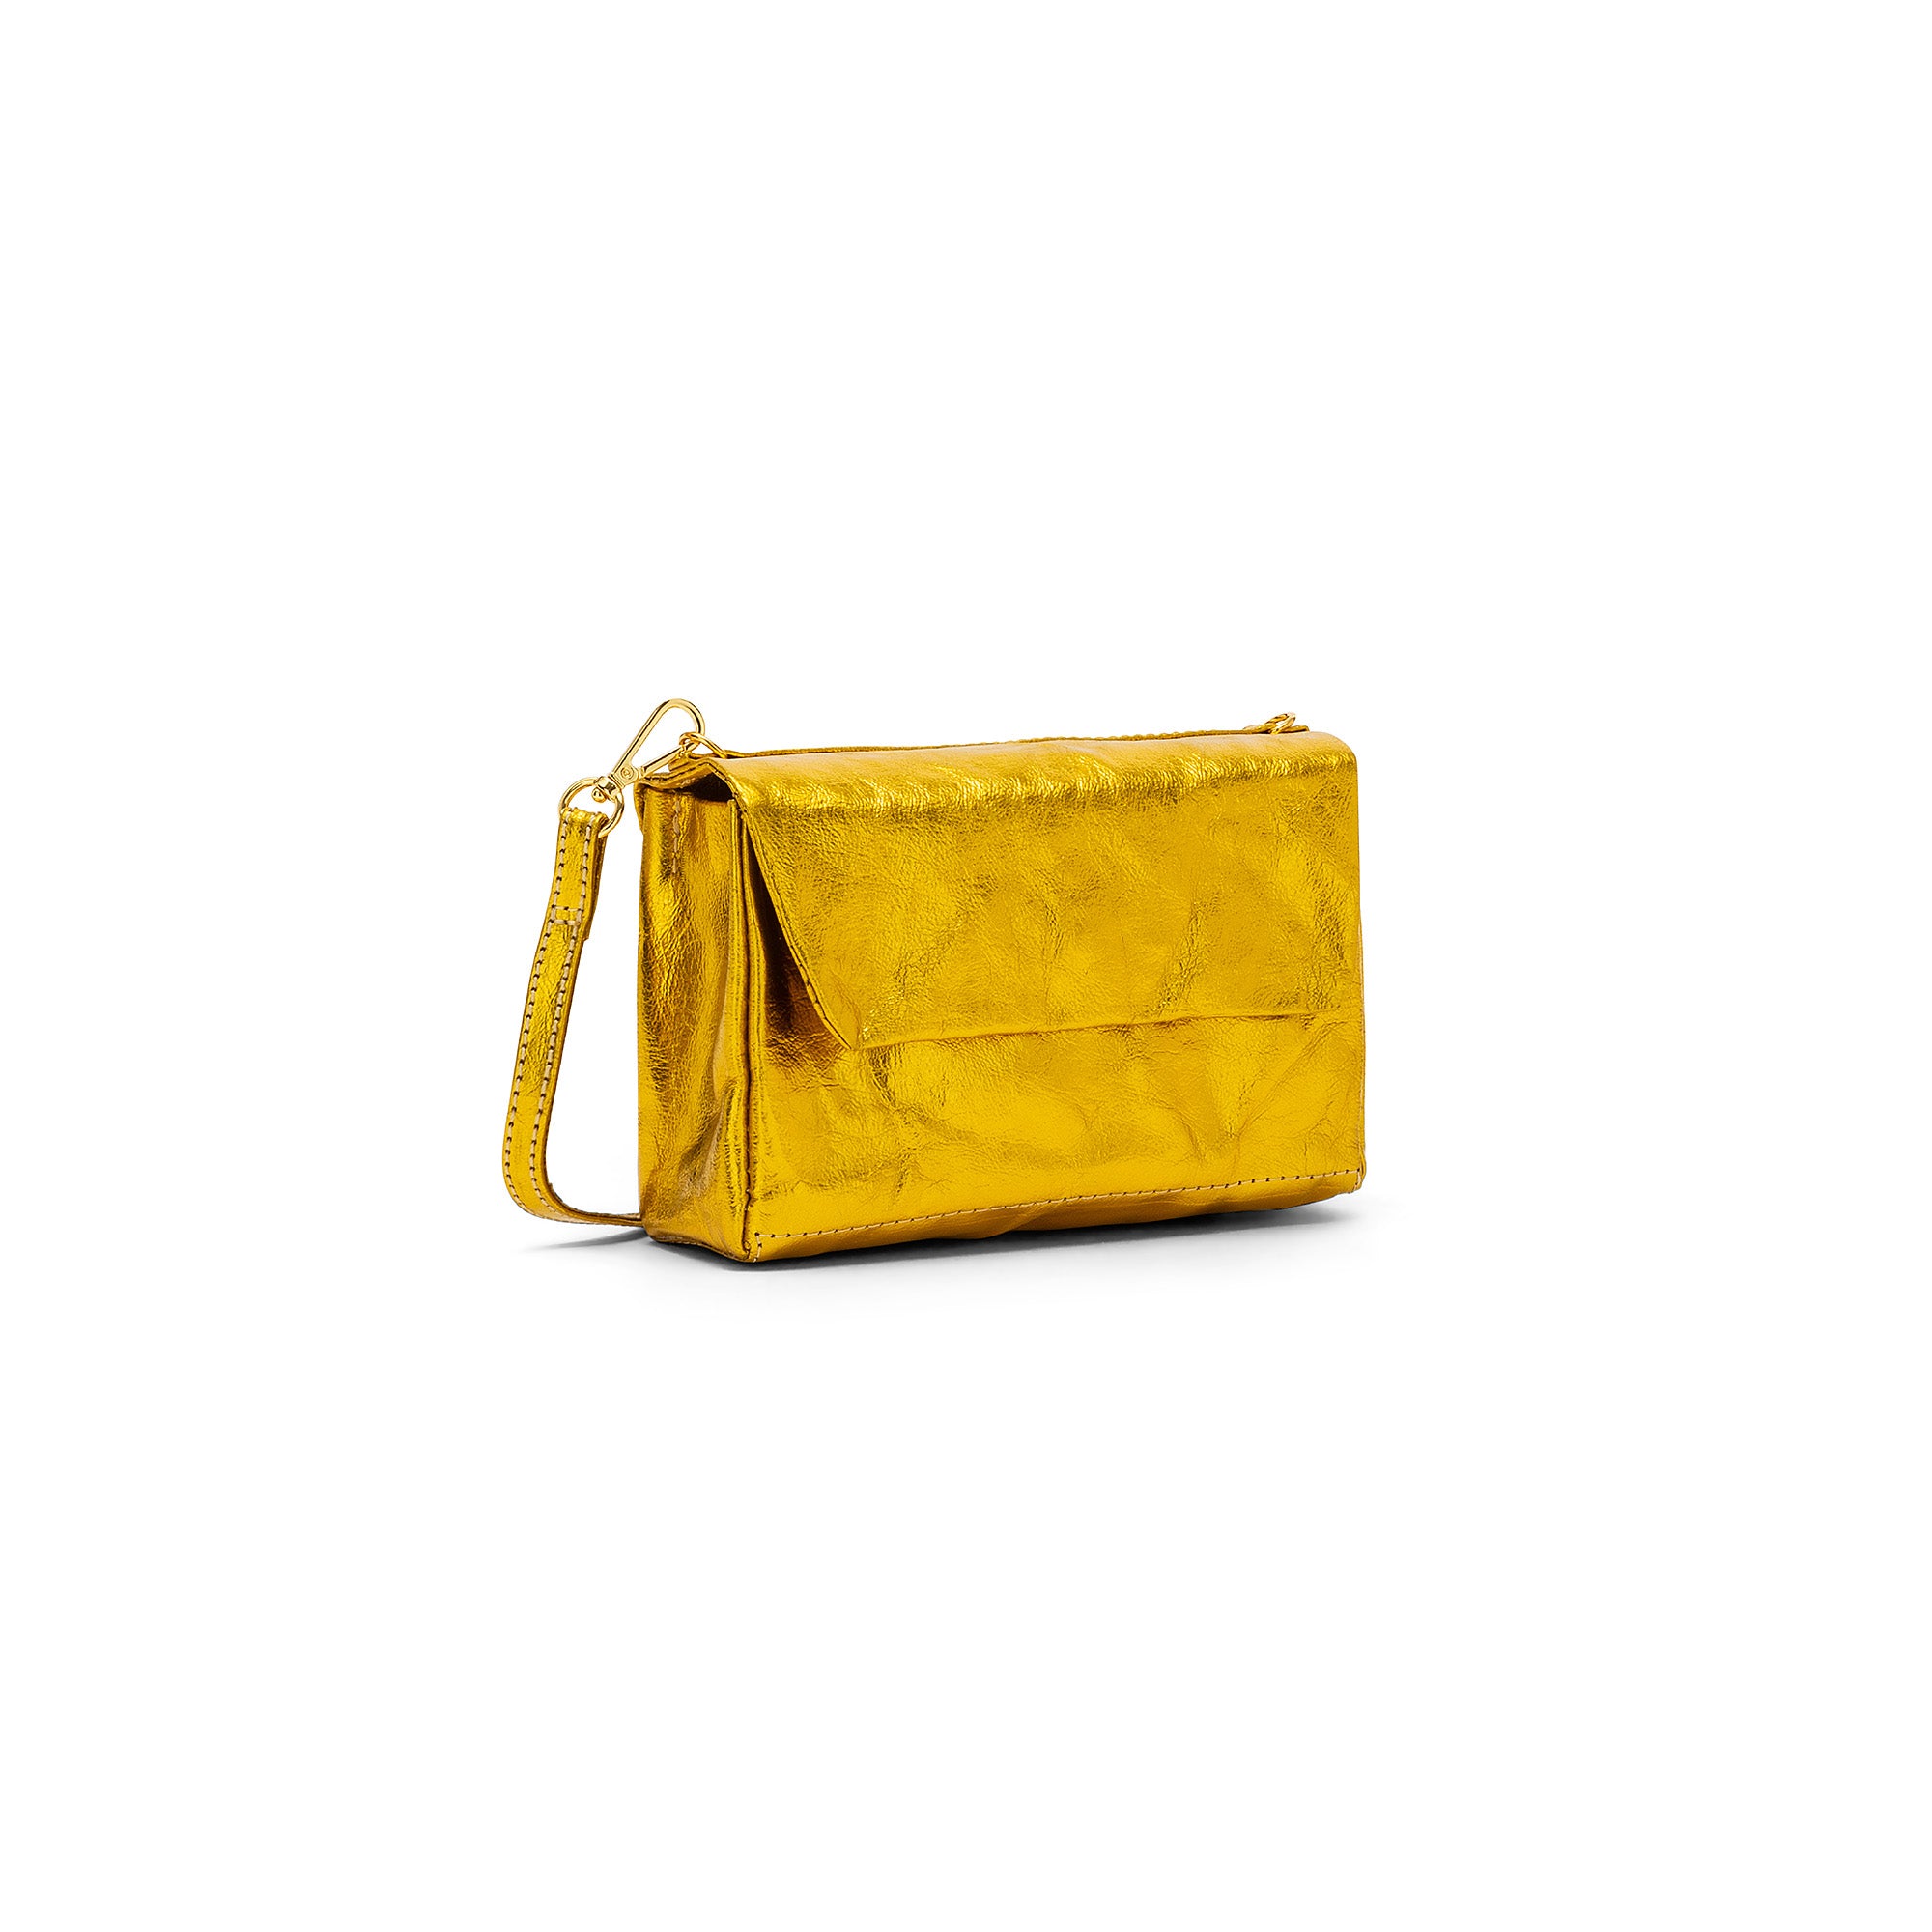 Uashmama Fashionable Crossbody or Clutch Handbag | Vegan, Mou